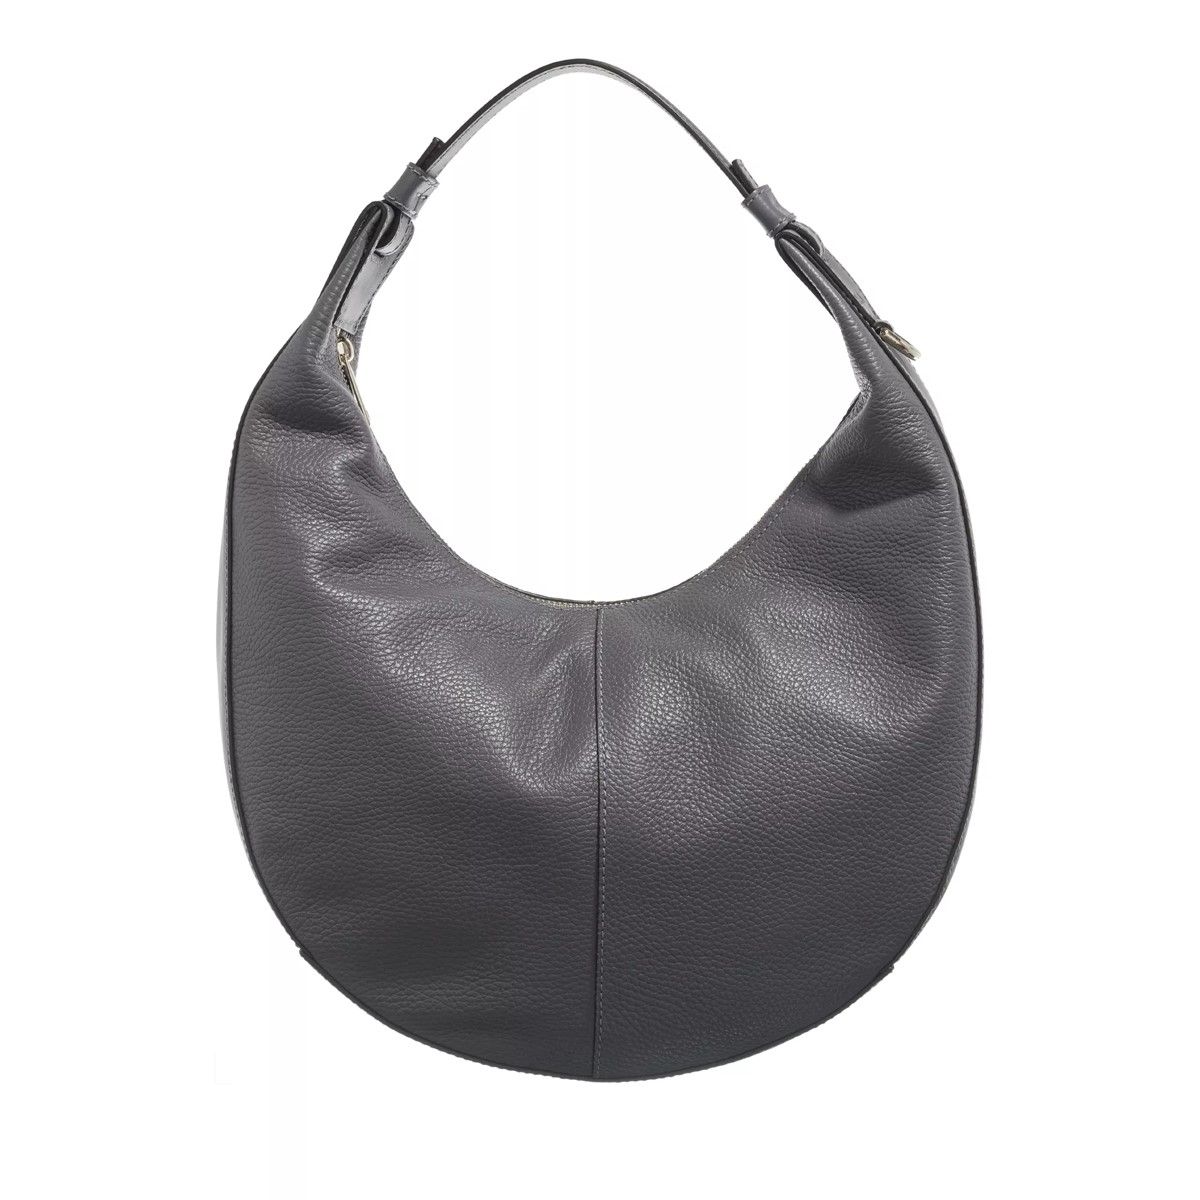 Furla Venere Micro Mini Top Handle Bag in Black